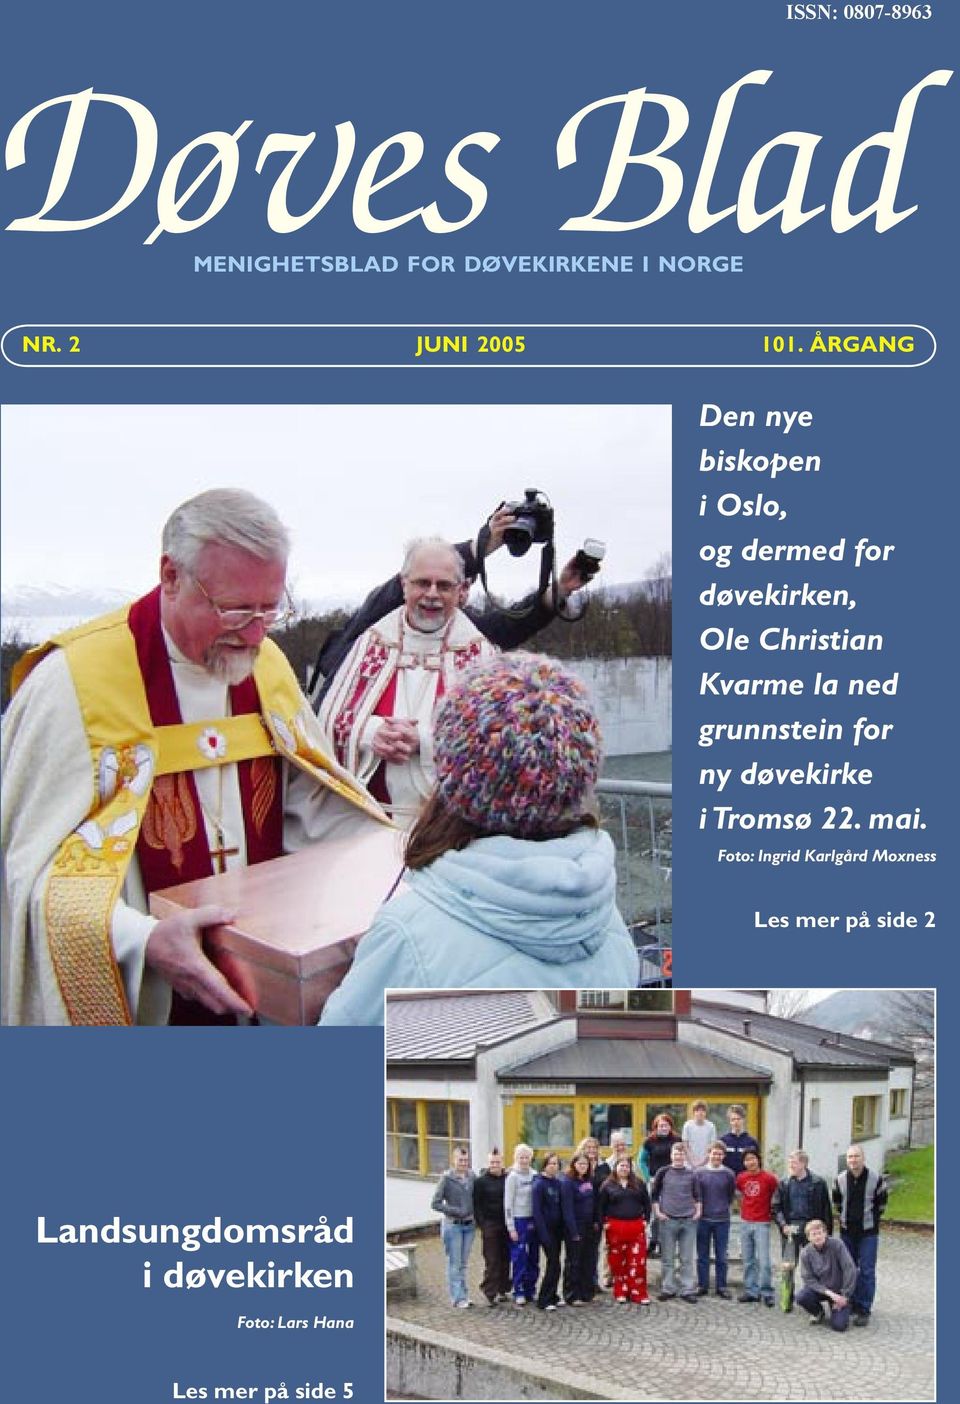 ÅRGANG Den nye biskopen i Oslo, og dermed for døvekirken, Ole Christian Kvarme la